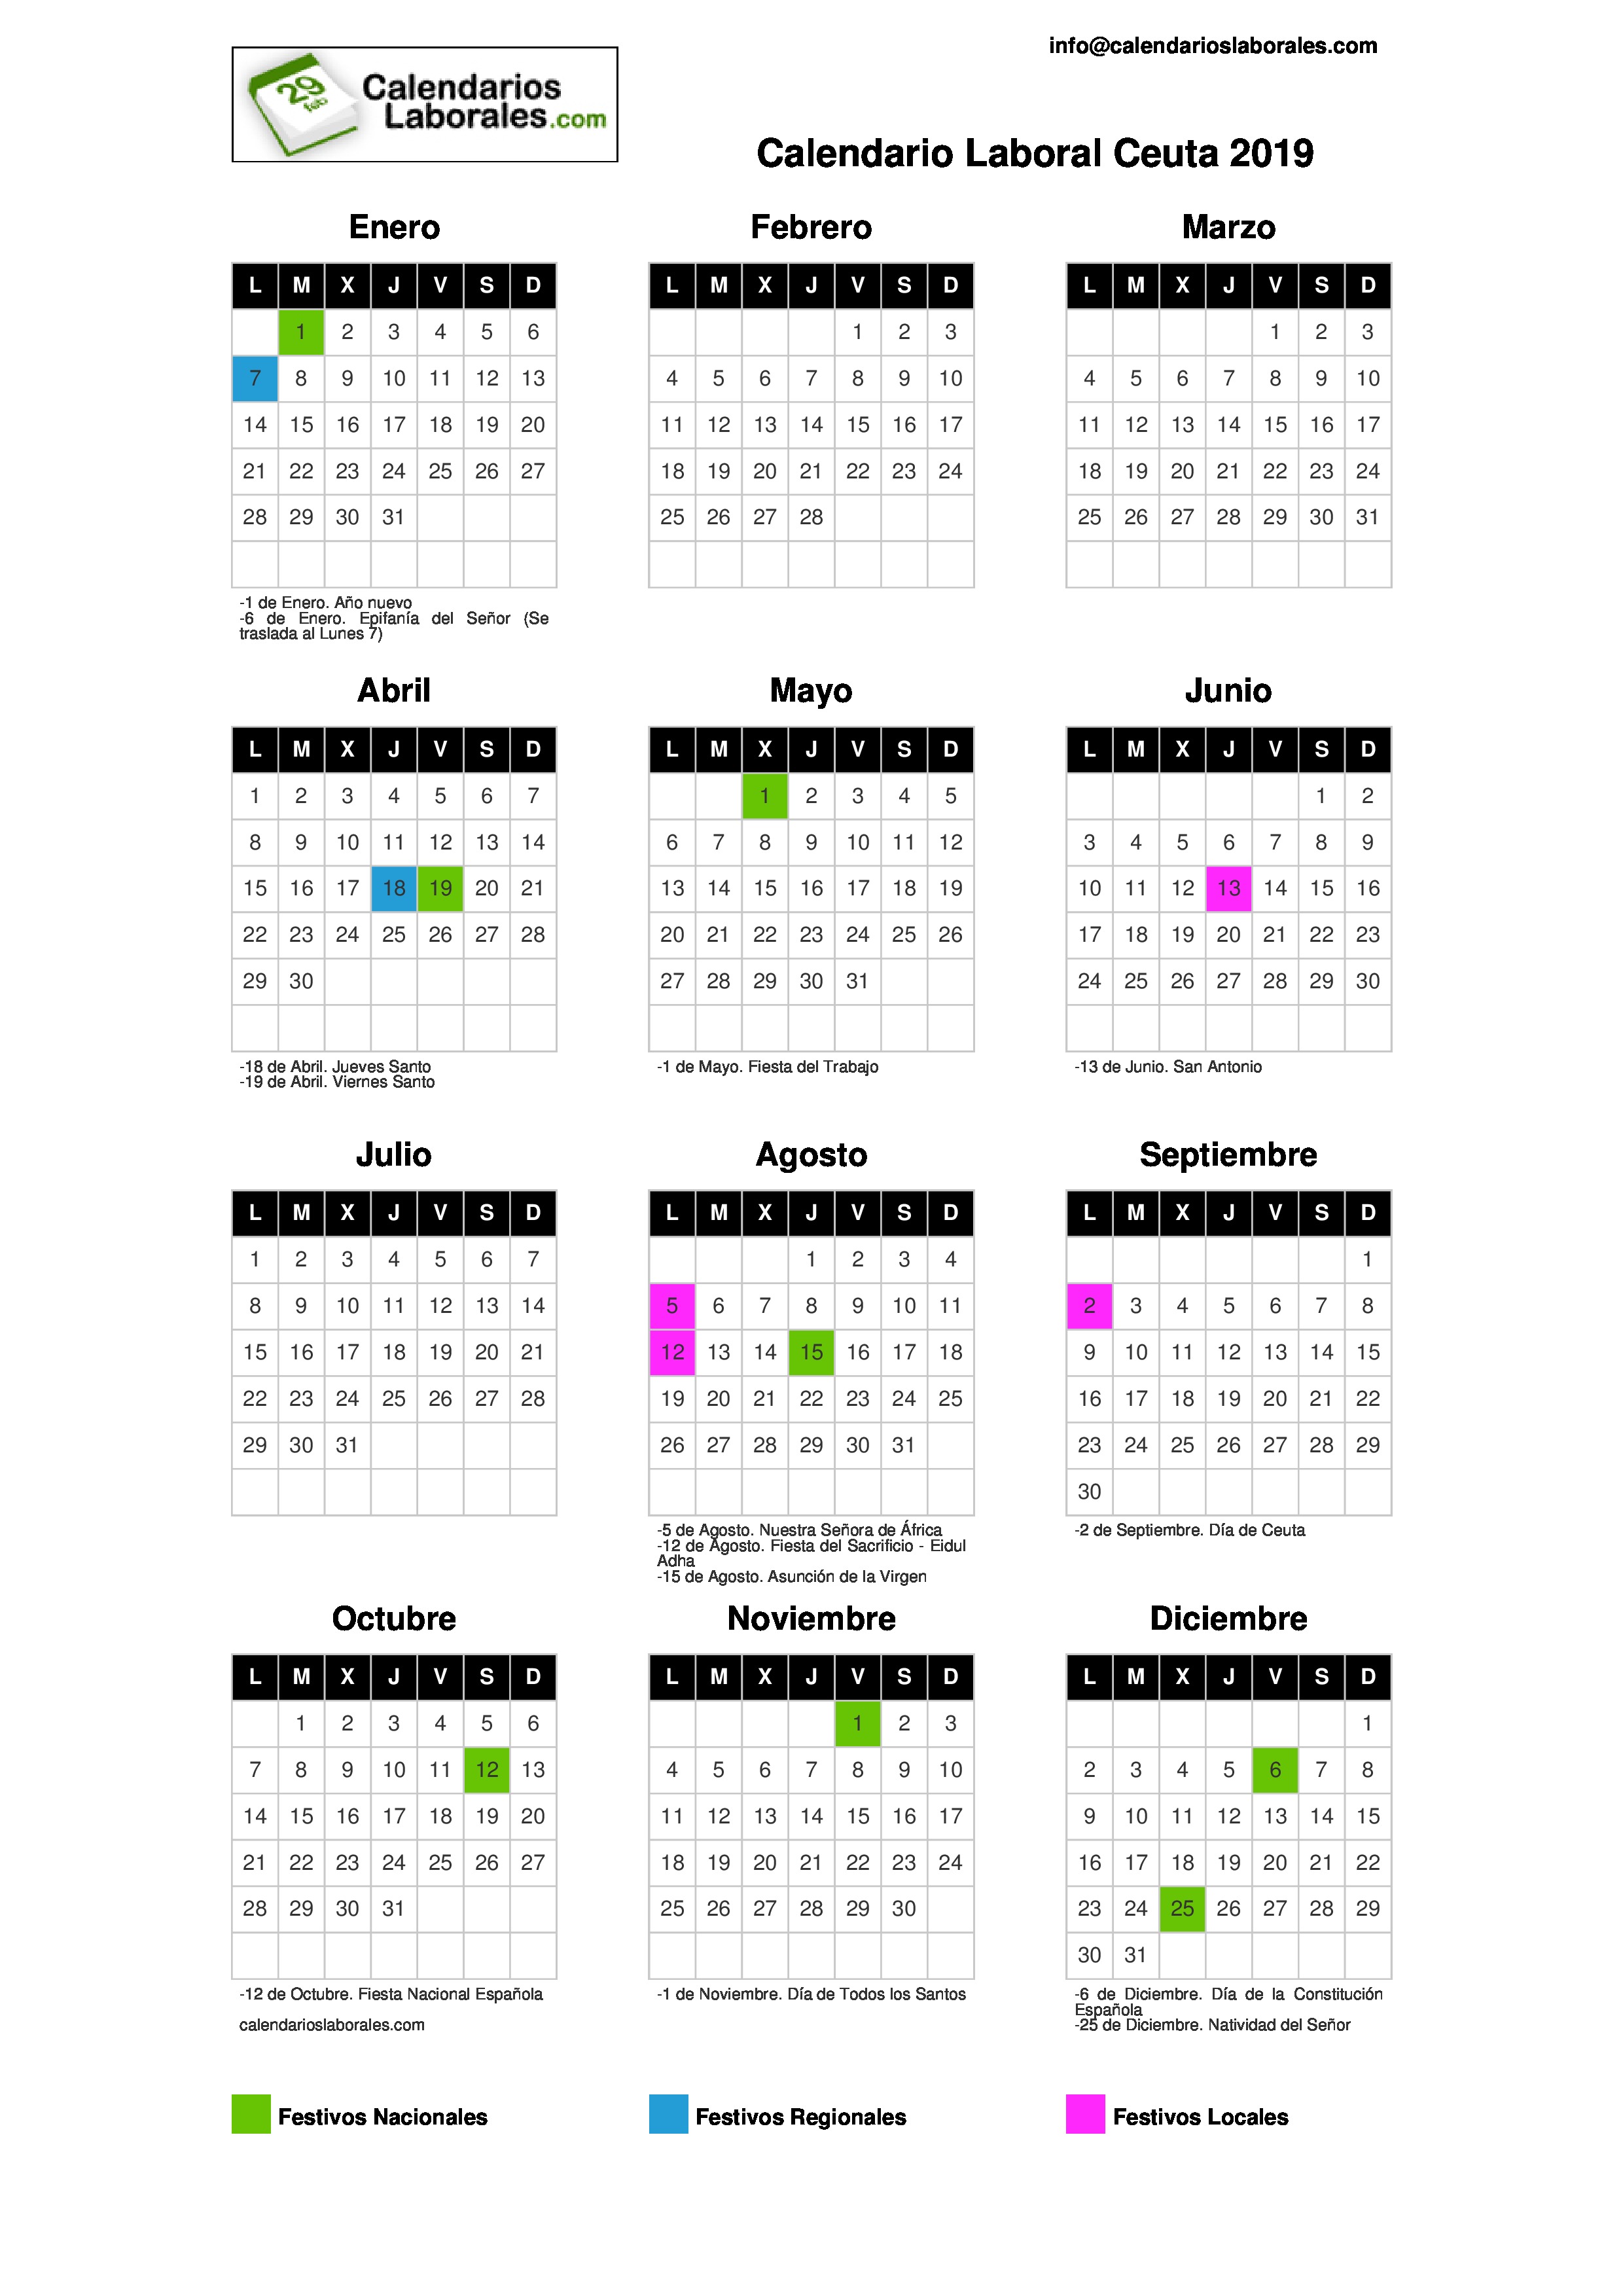 Calendario Laboral Ceuta 2019